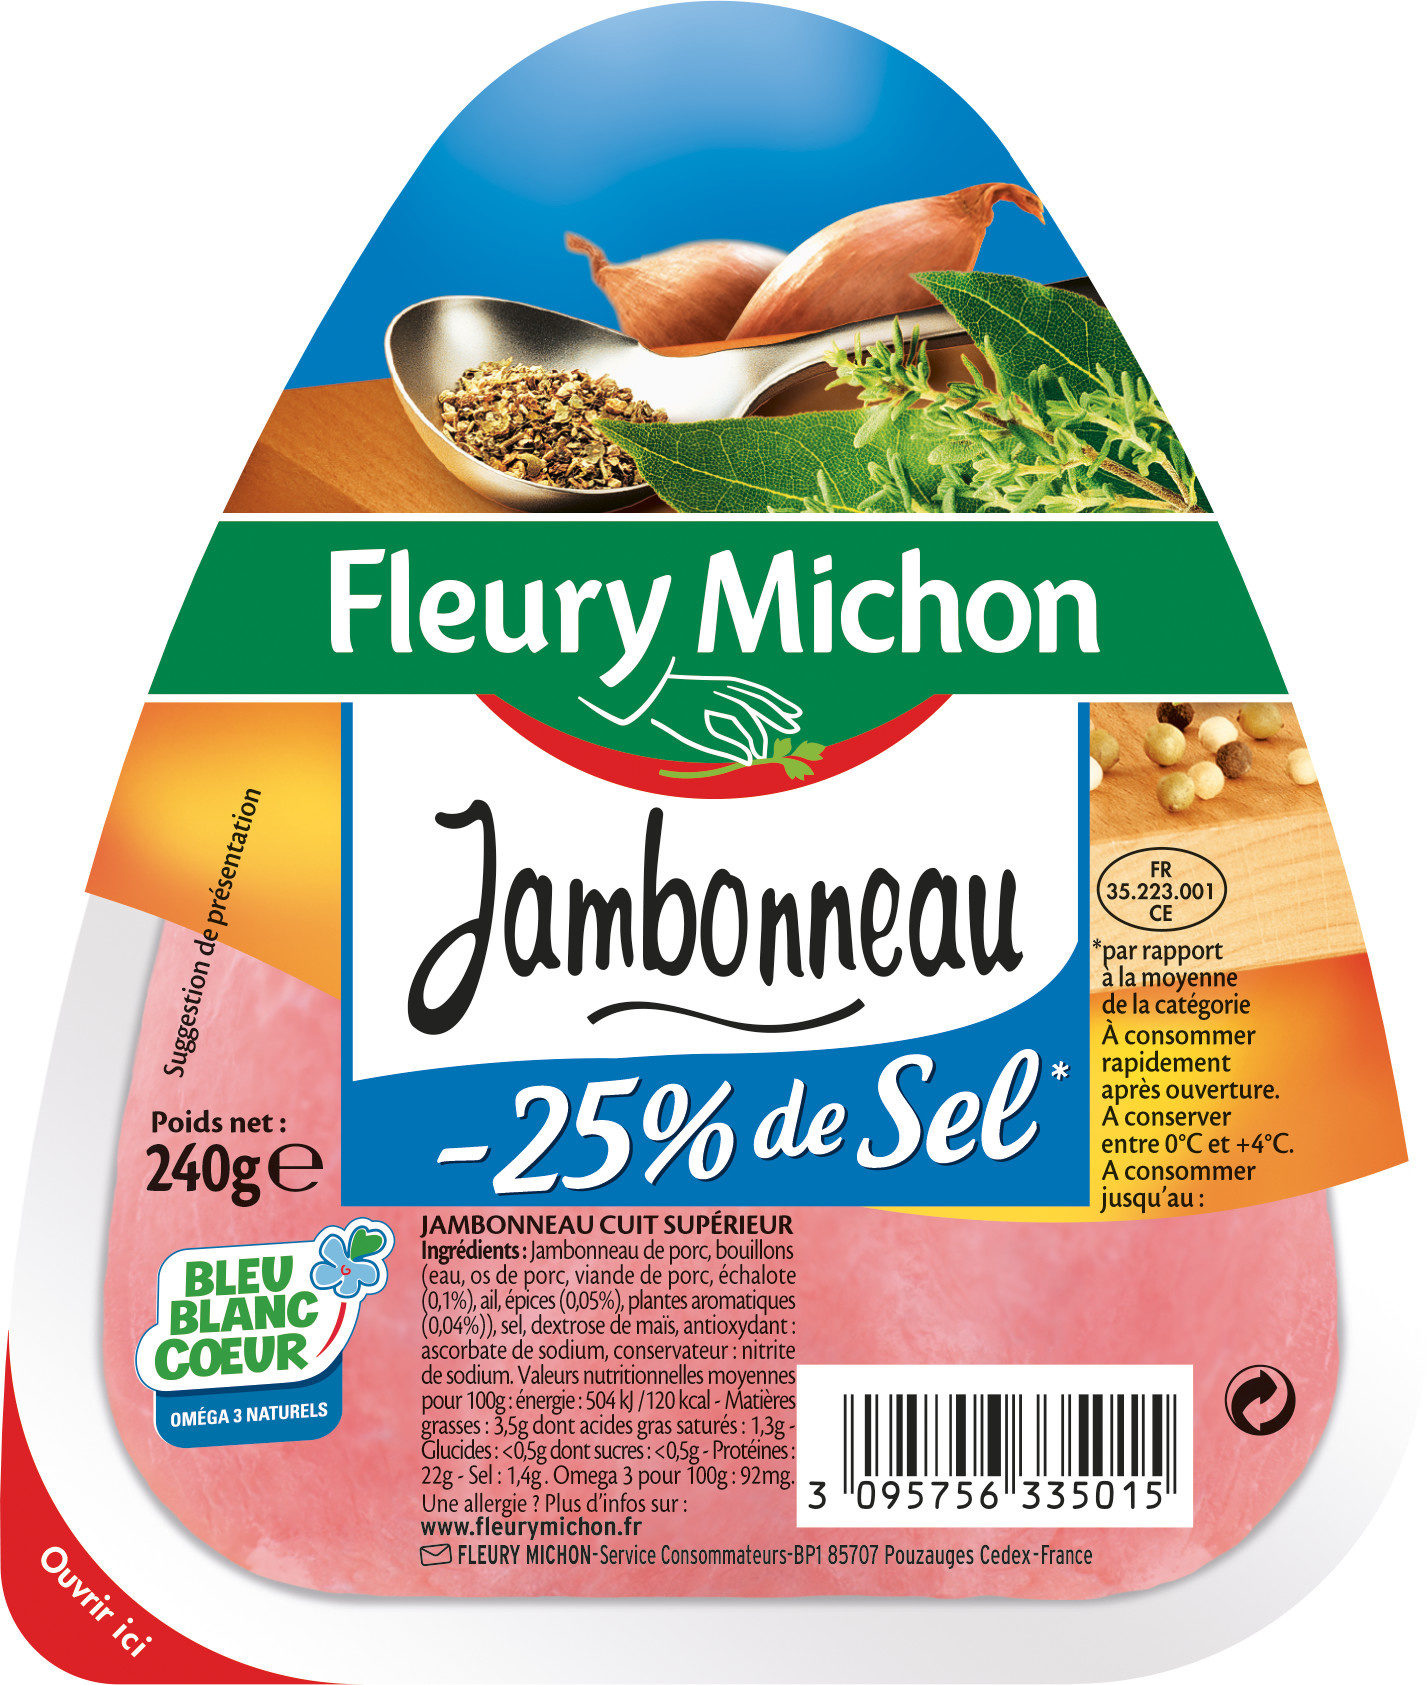 Jambonneau -25% de Sel - Prodotto - fr